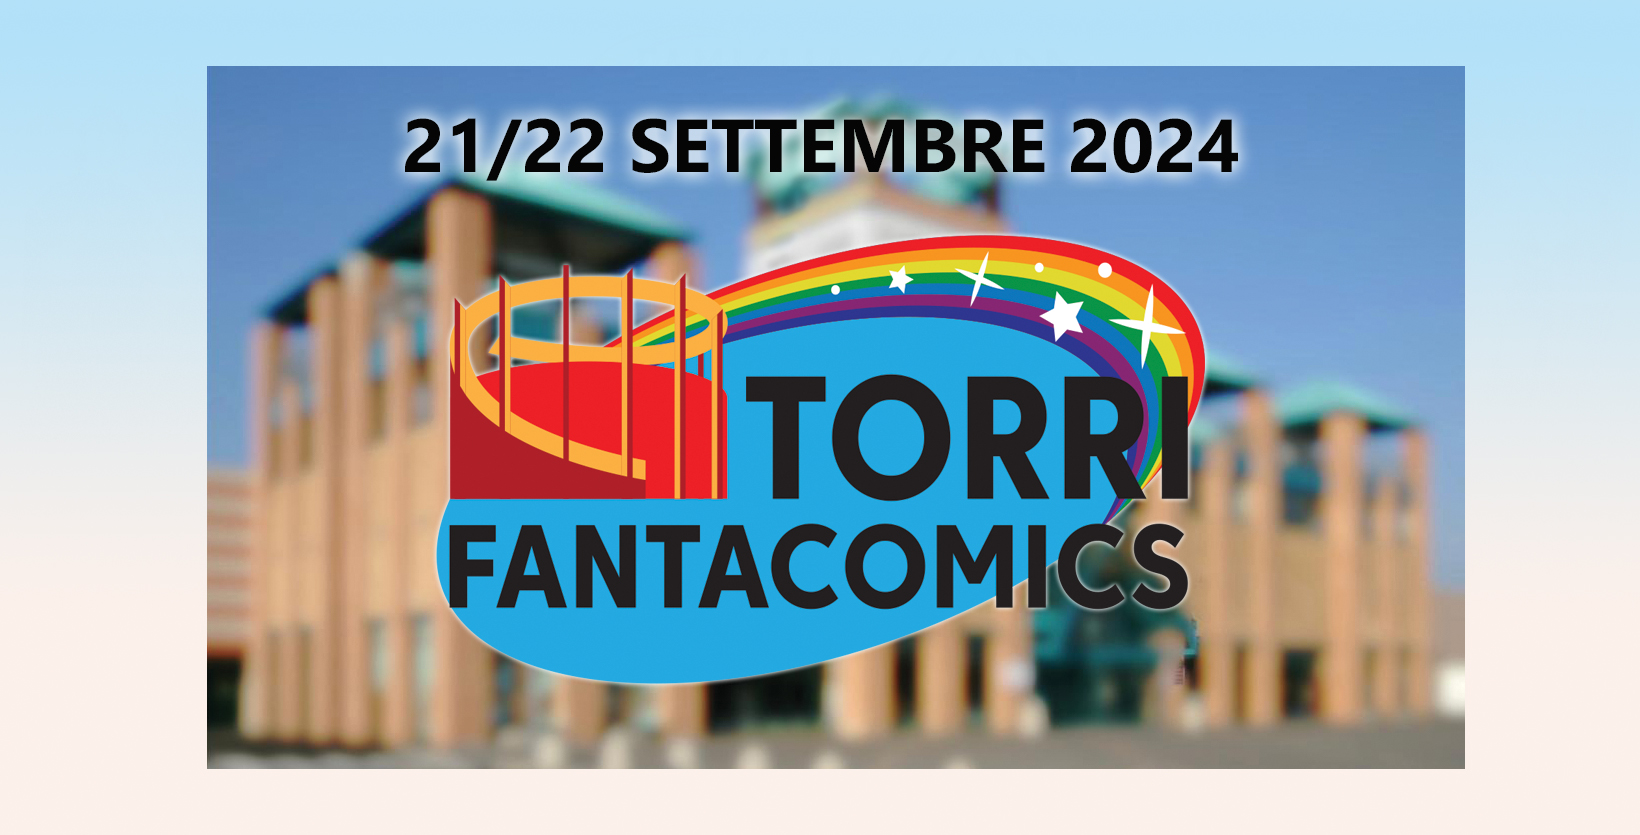 La prima edizione di Torri FantaComics: 21 e 22 settembre 2024 a Parma